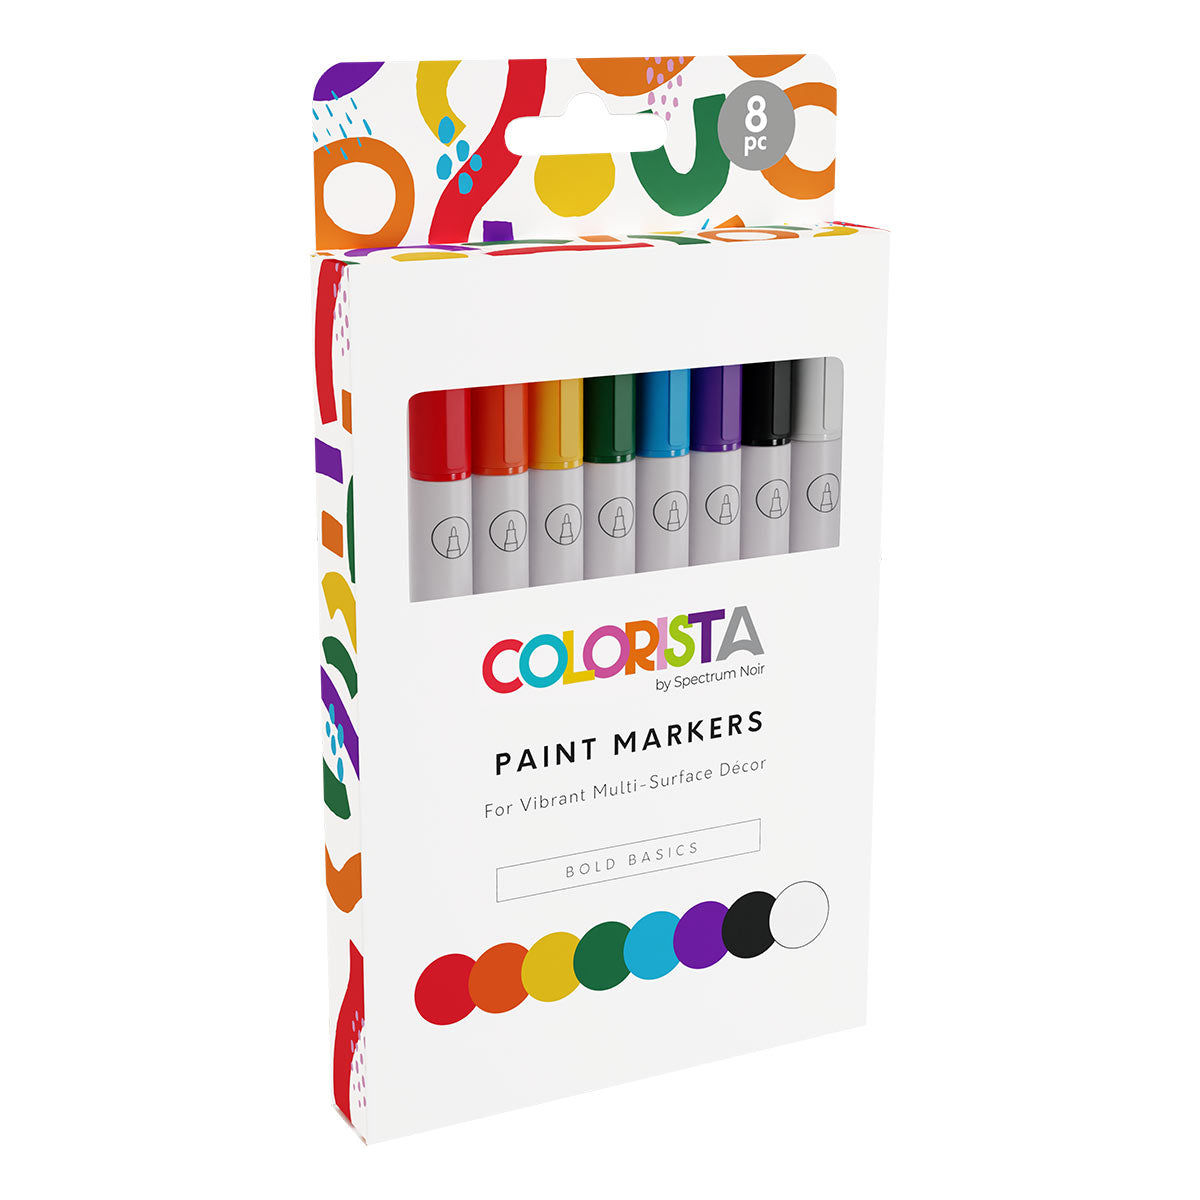 Spectrum Noir Colorista - Paint Markers (8 set) Bold Basics